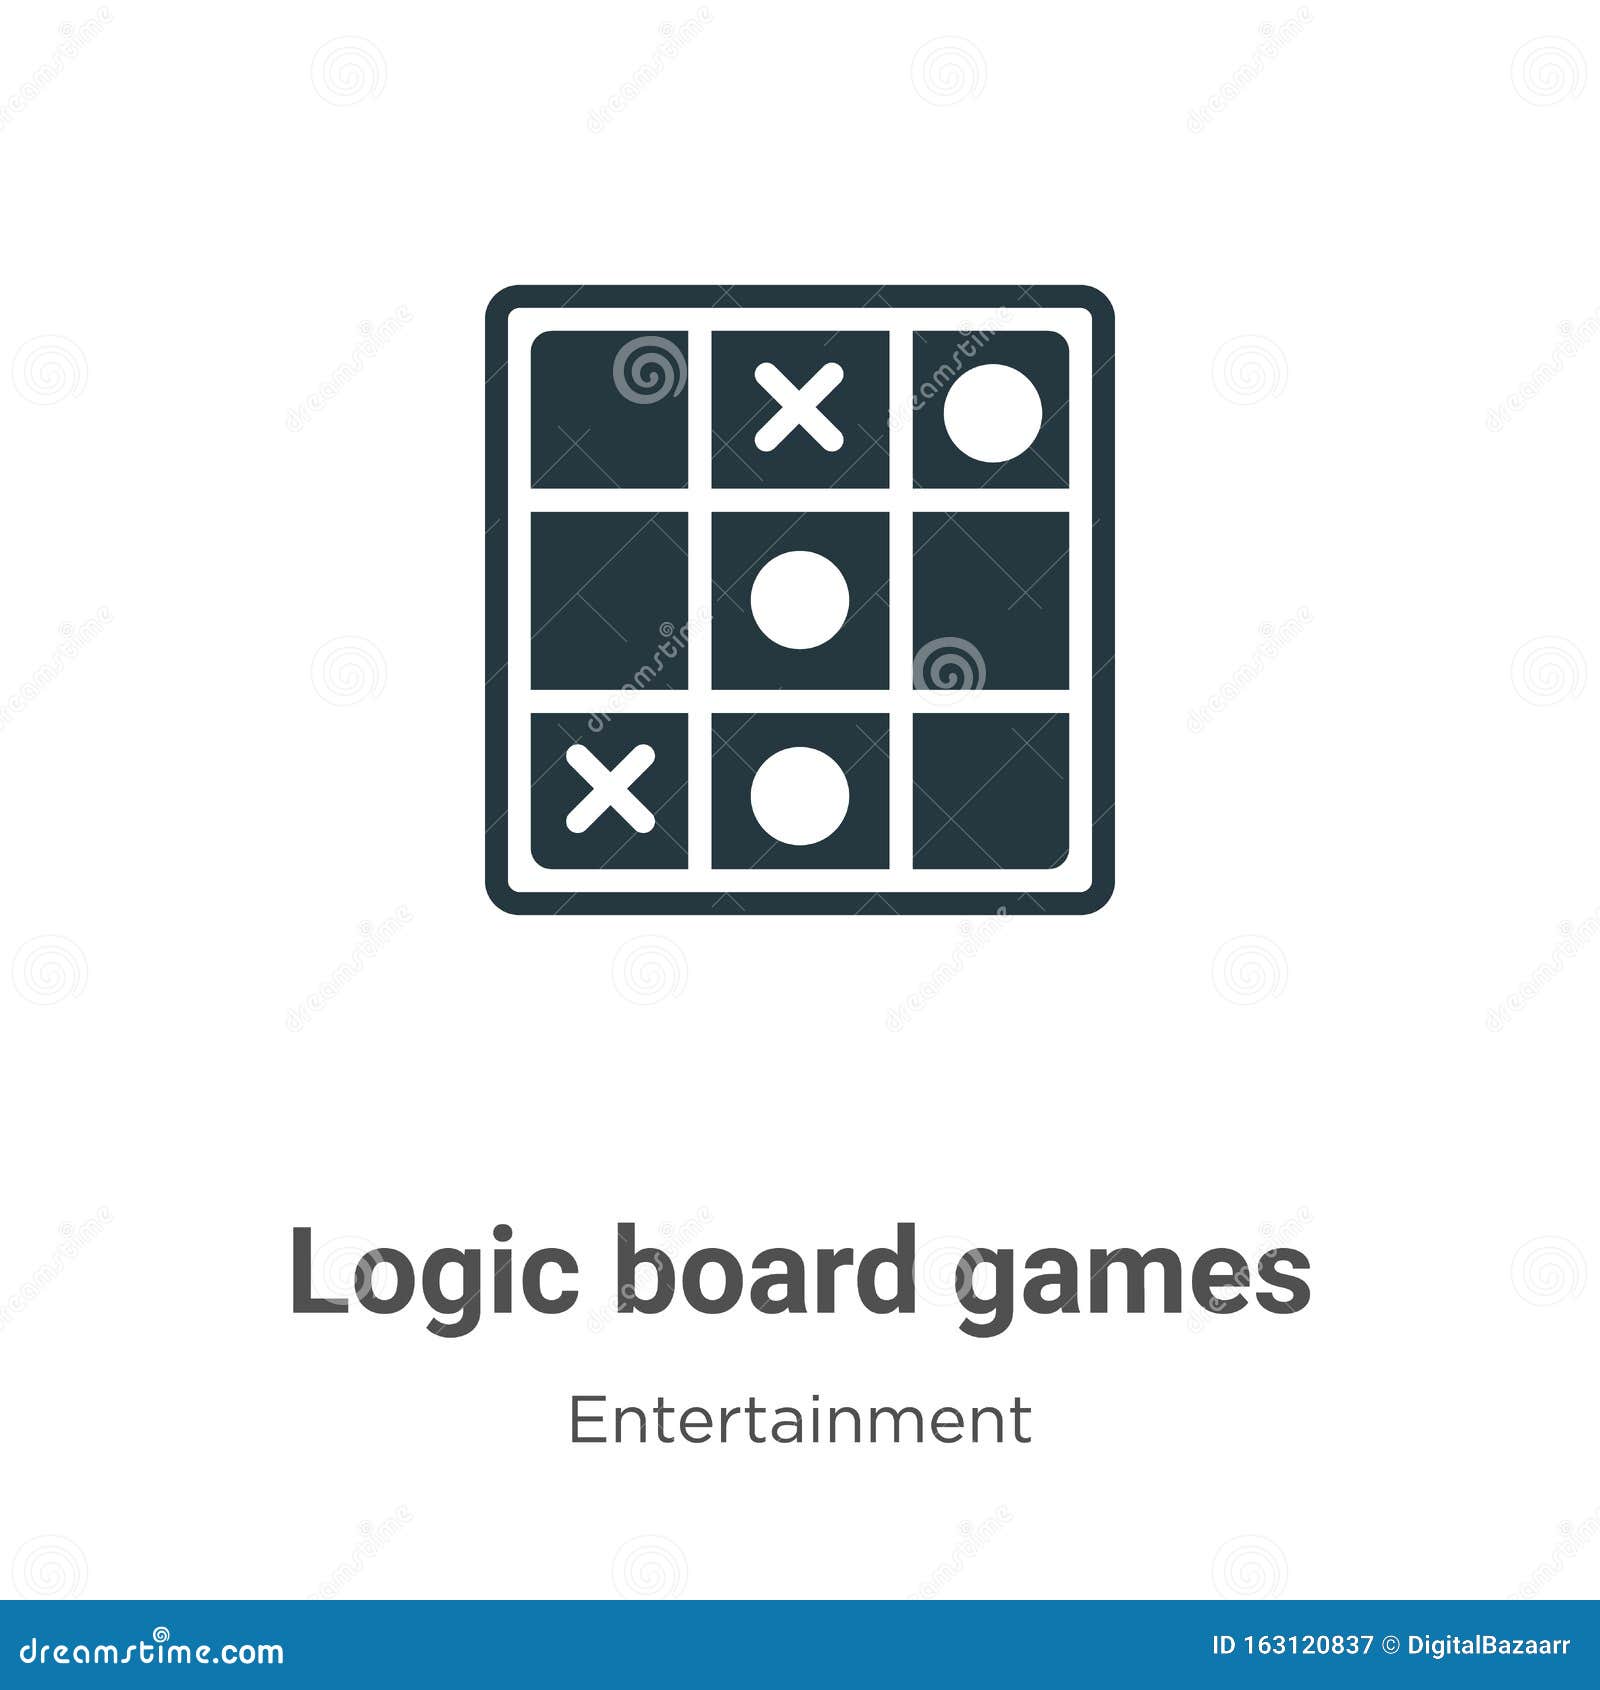 Jogos Lógicos de Tabuleiro – Jogos Lógicos de tabul